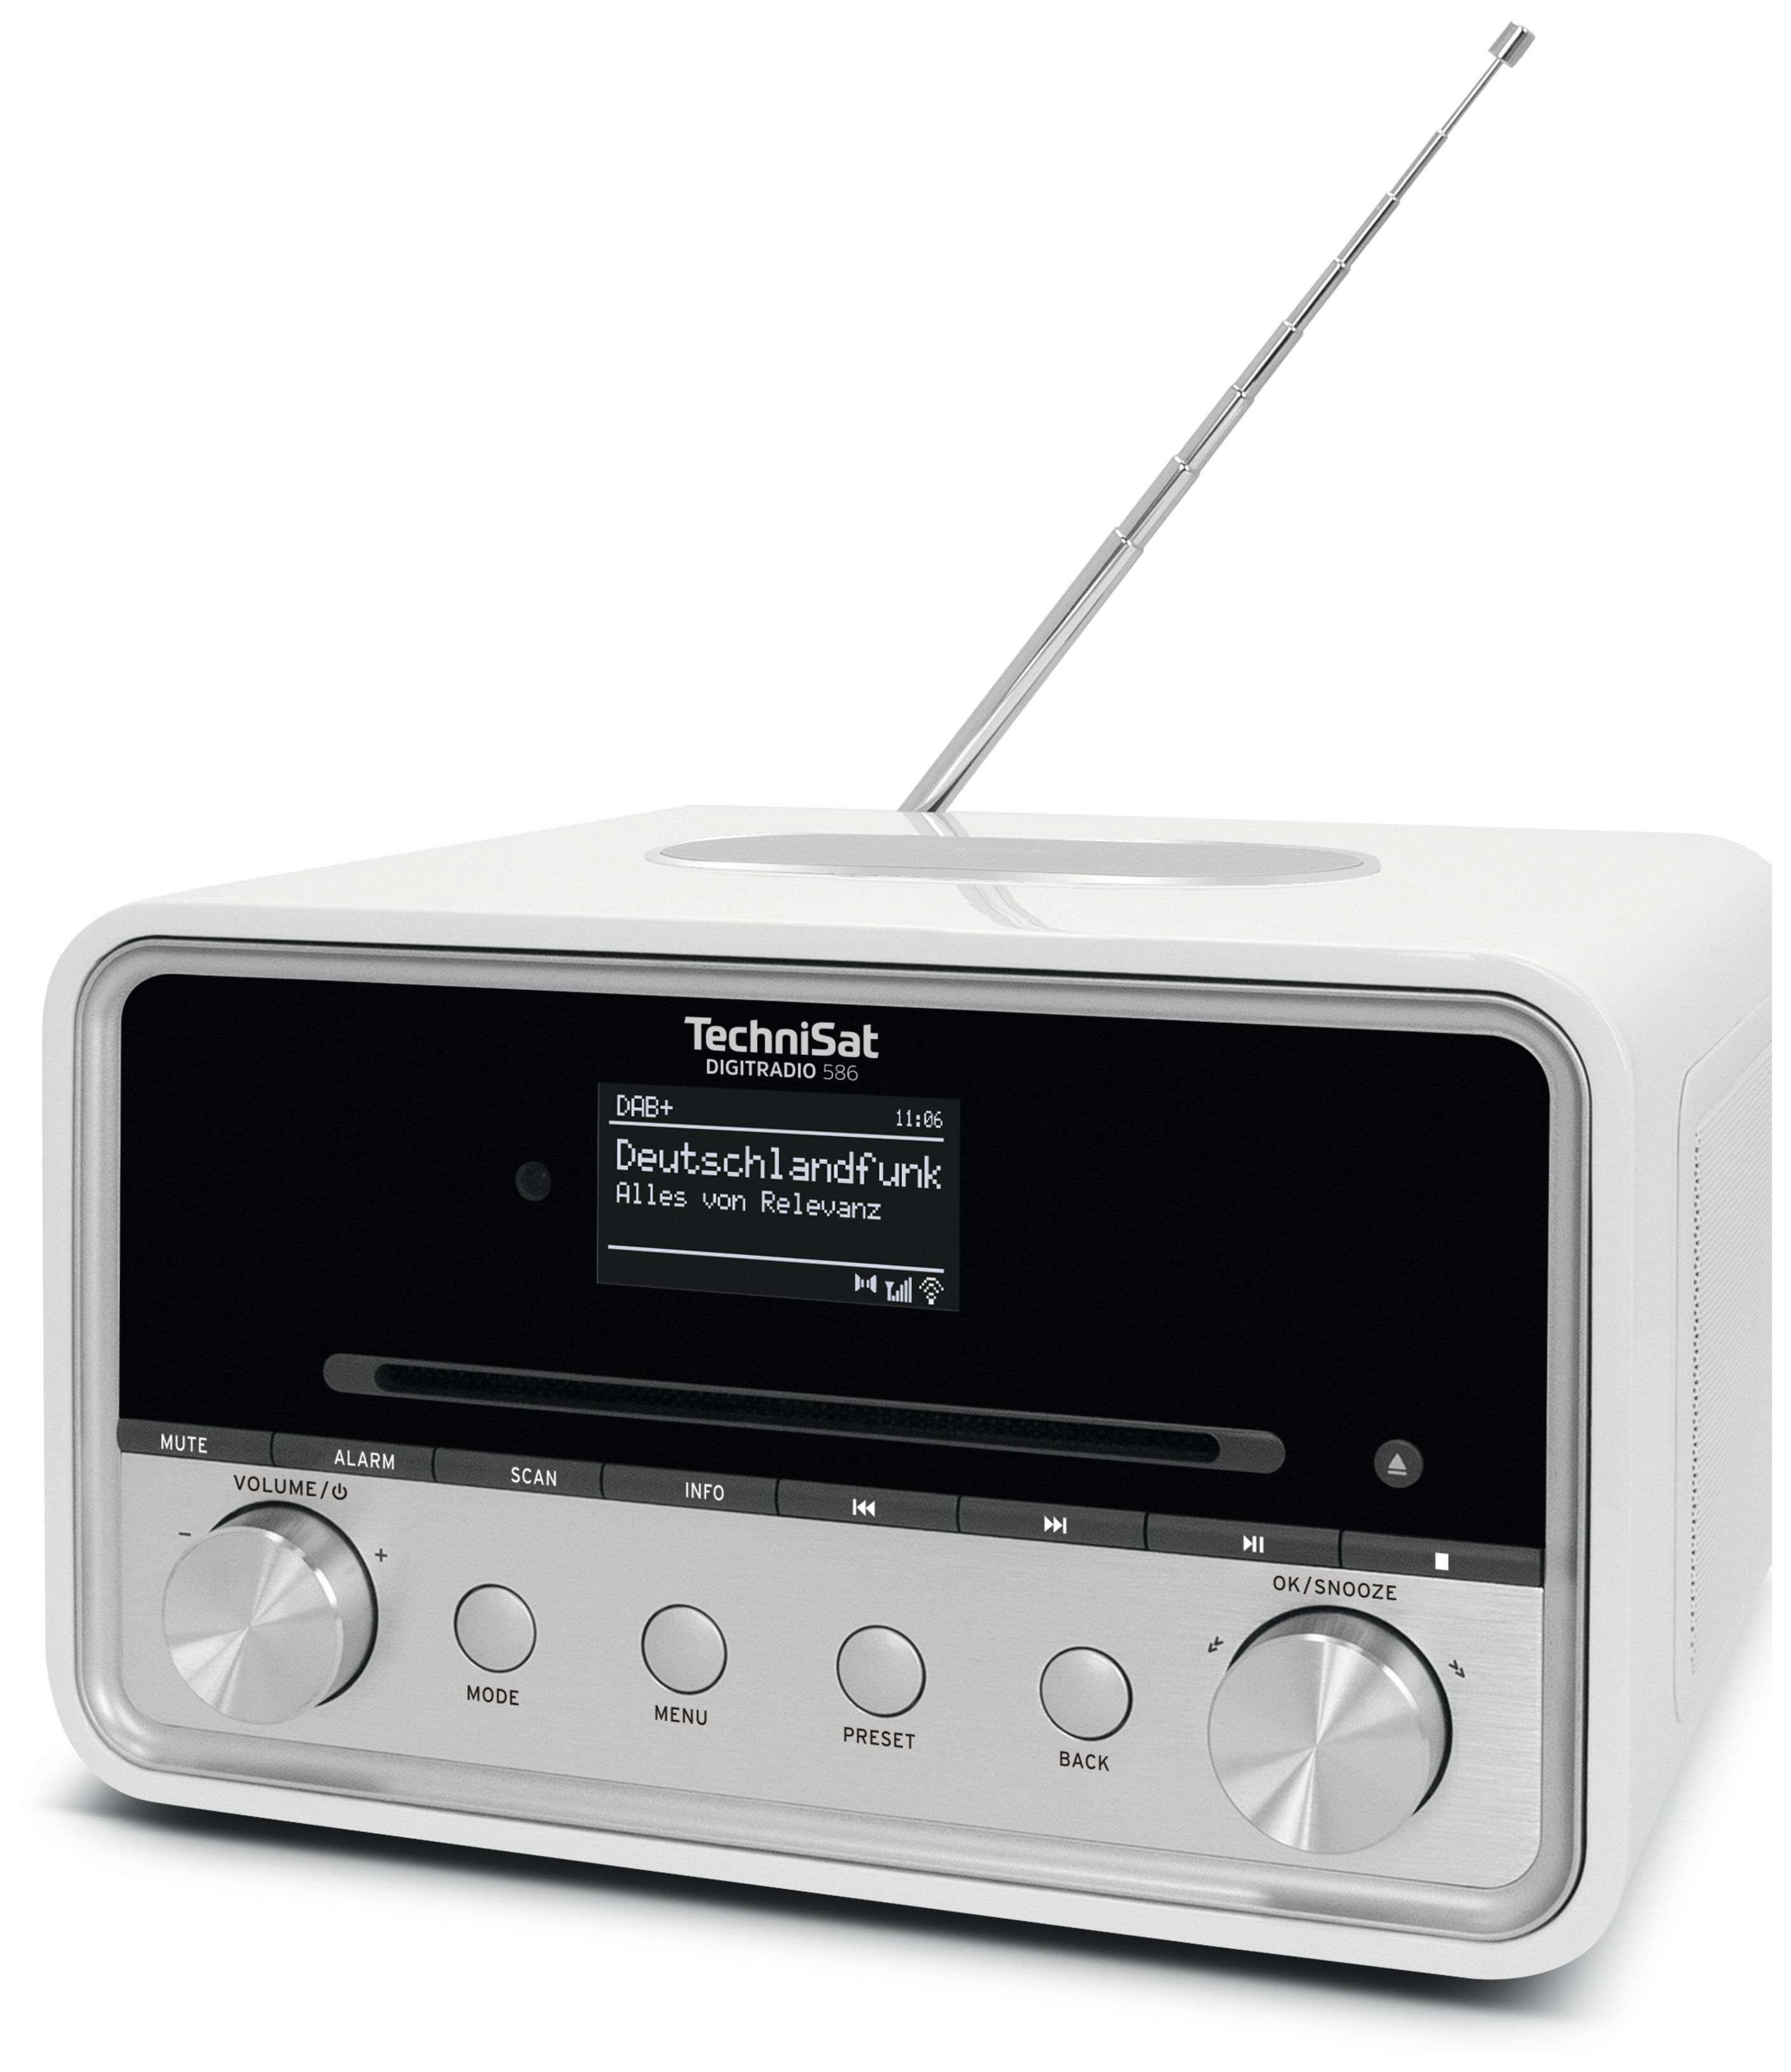 Radio TechniSat Persönlich Technomarkt Digitradio expert DAB+, Bluetooth 586 FM (Weiß) von